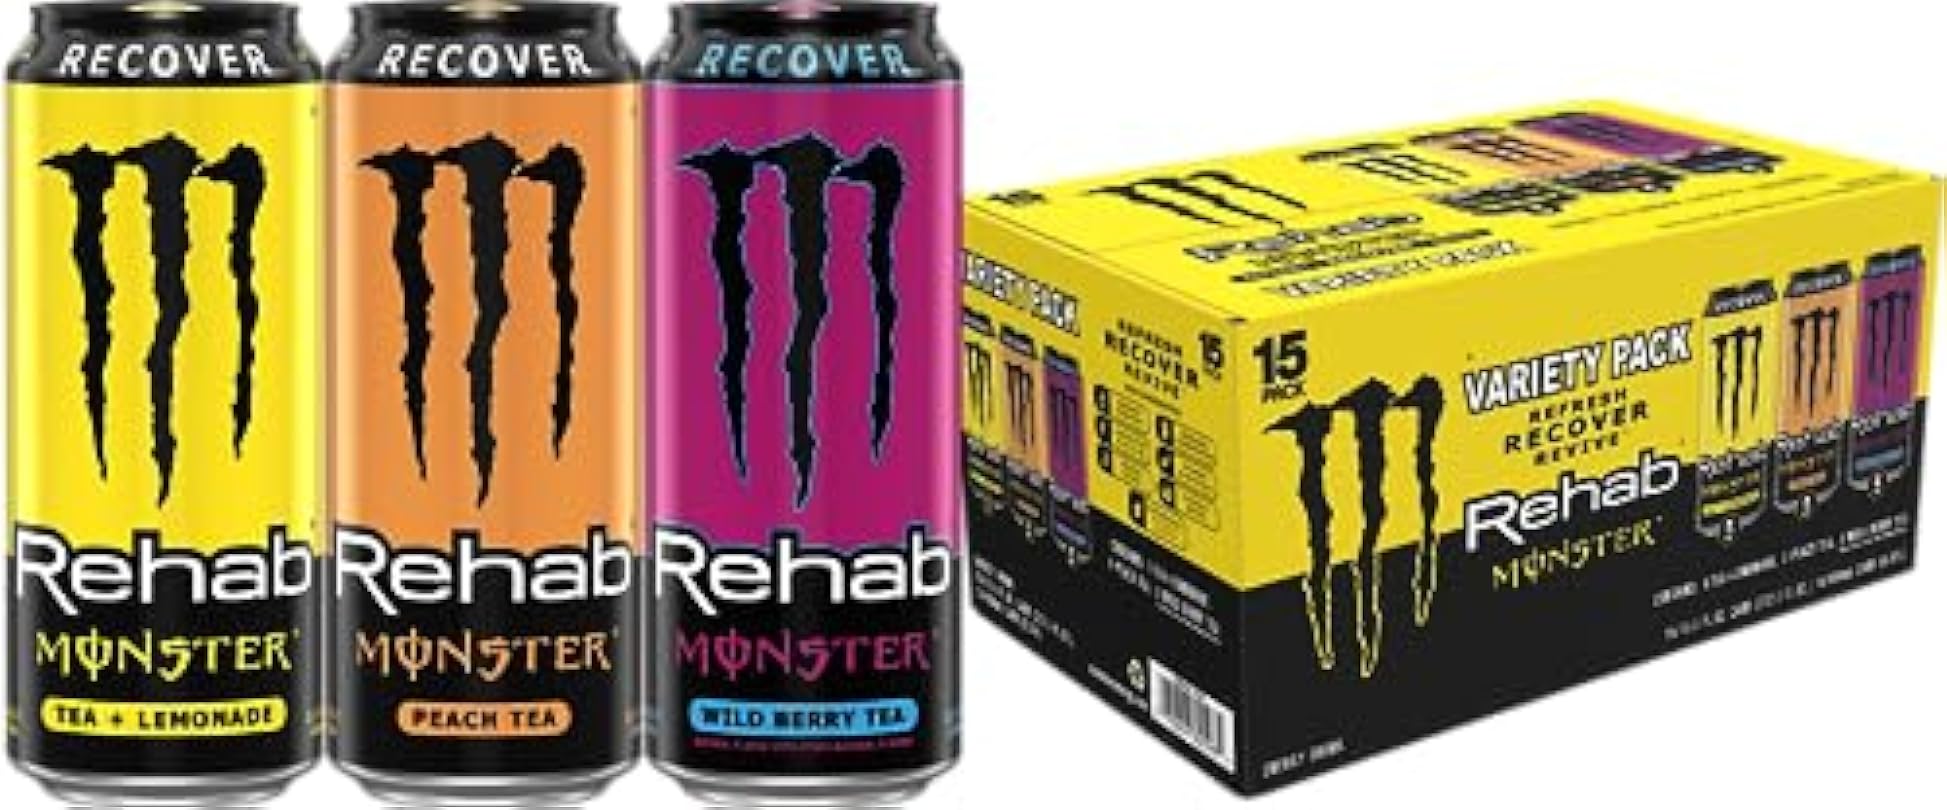 Monster Energy Rehab Tea + Lemonade, Peach Tea, Wild Berry Tea, Variety Pack, Energy Iced Tea,15.5 Ounce (Pack of 15) 760772333